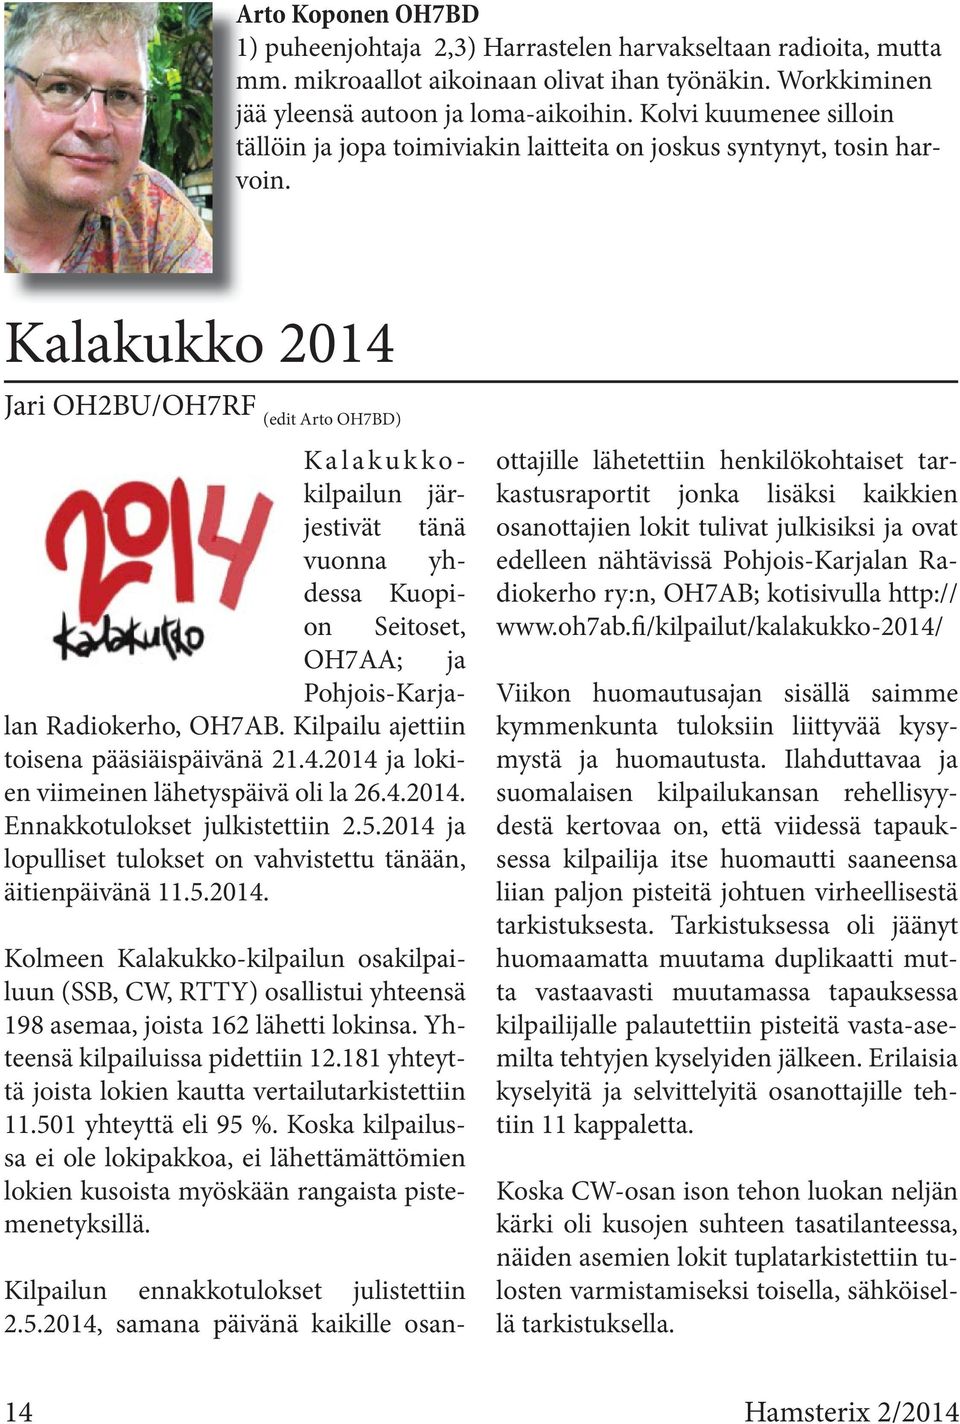 Kalakukkokilpailun järjestivät tänä vuonna yhdessa Kuopion Seitoset, OH7AA; ja Pohjois-Karjalan Radiokerho, OH7AB. Kilpailu ajettiin toisena pääsiäispäivänä 21.4.